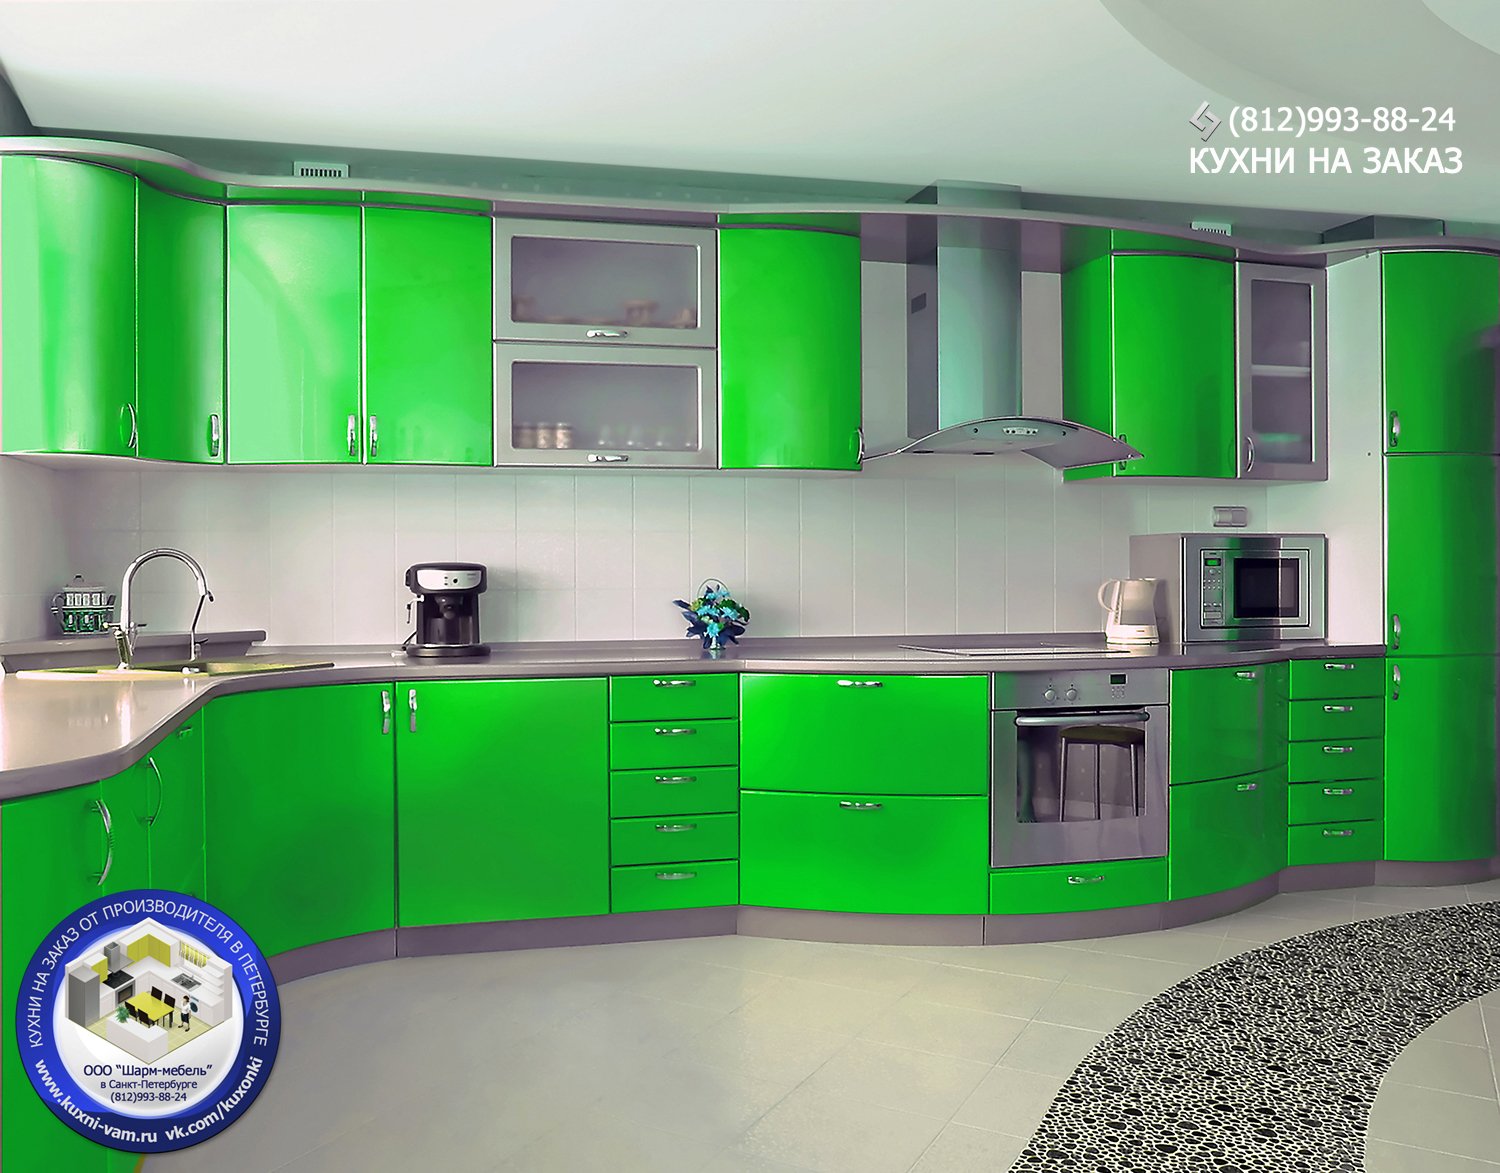 Кухонный гарнитур угловой цвет. Кухонный гарнитур с радиусными фасадами. Зеленая угловая кухня. Салатовый кухонный гарнитур. Кухонный гарнитур зеленого цвета.